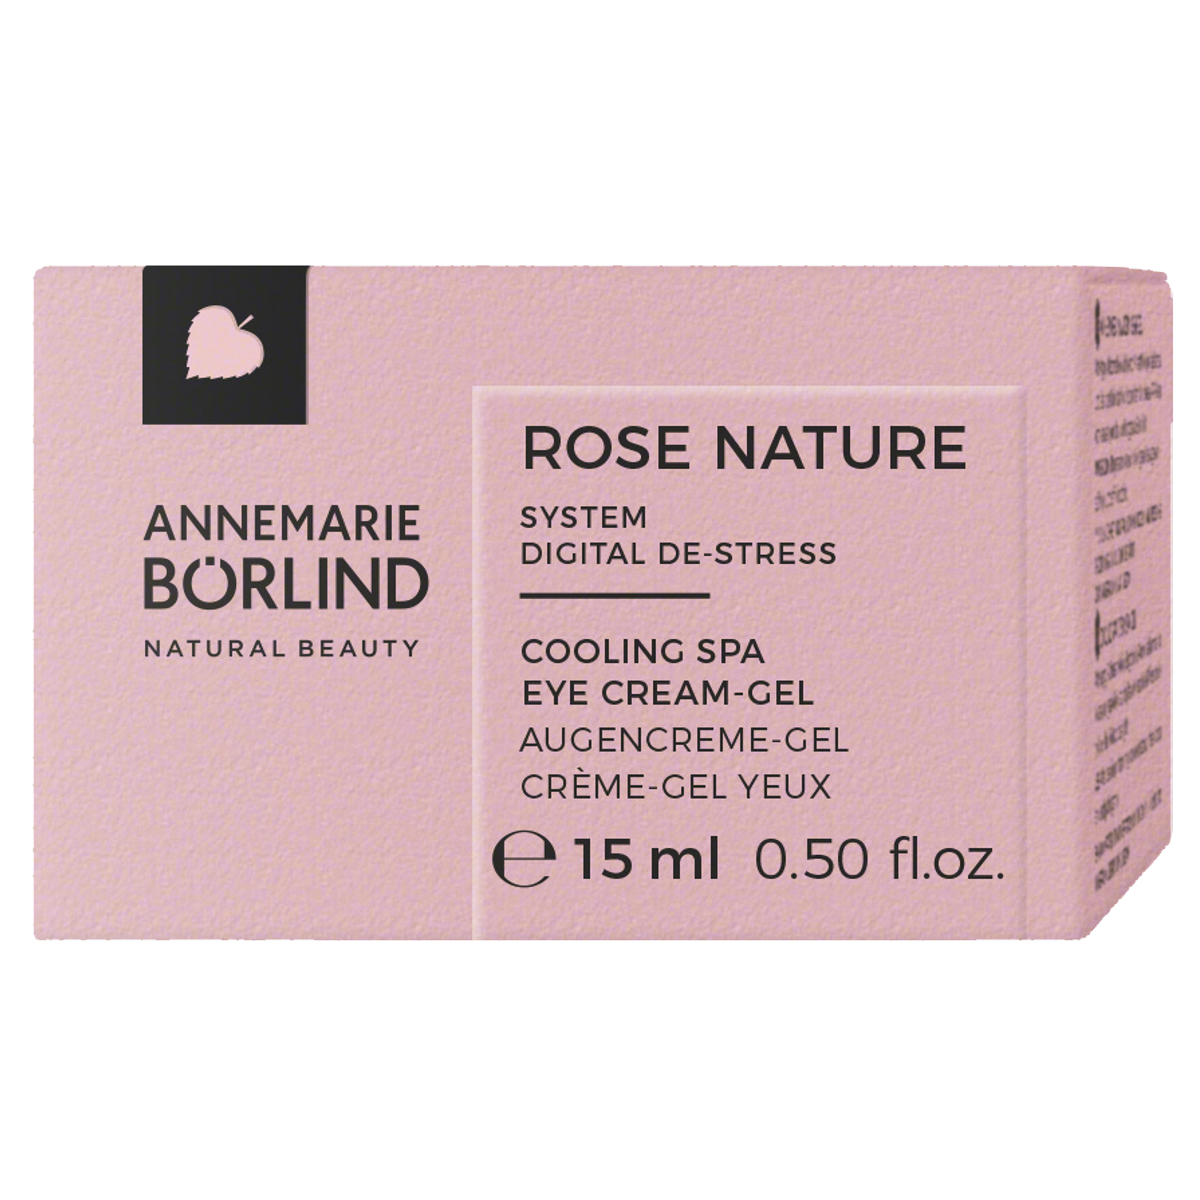 Börlind Rose Nature Cooling Spa Eye Creme Gel Verpackung